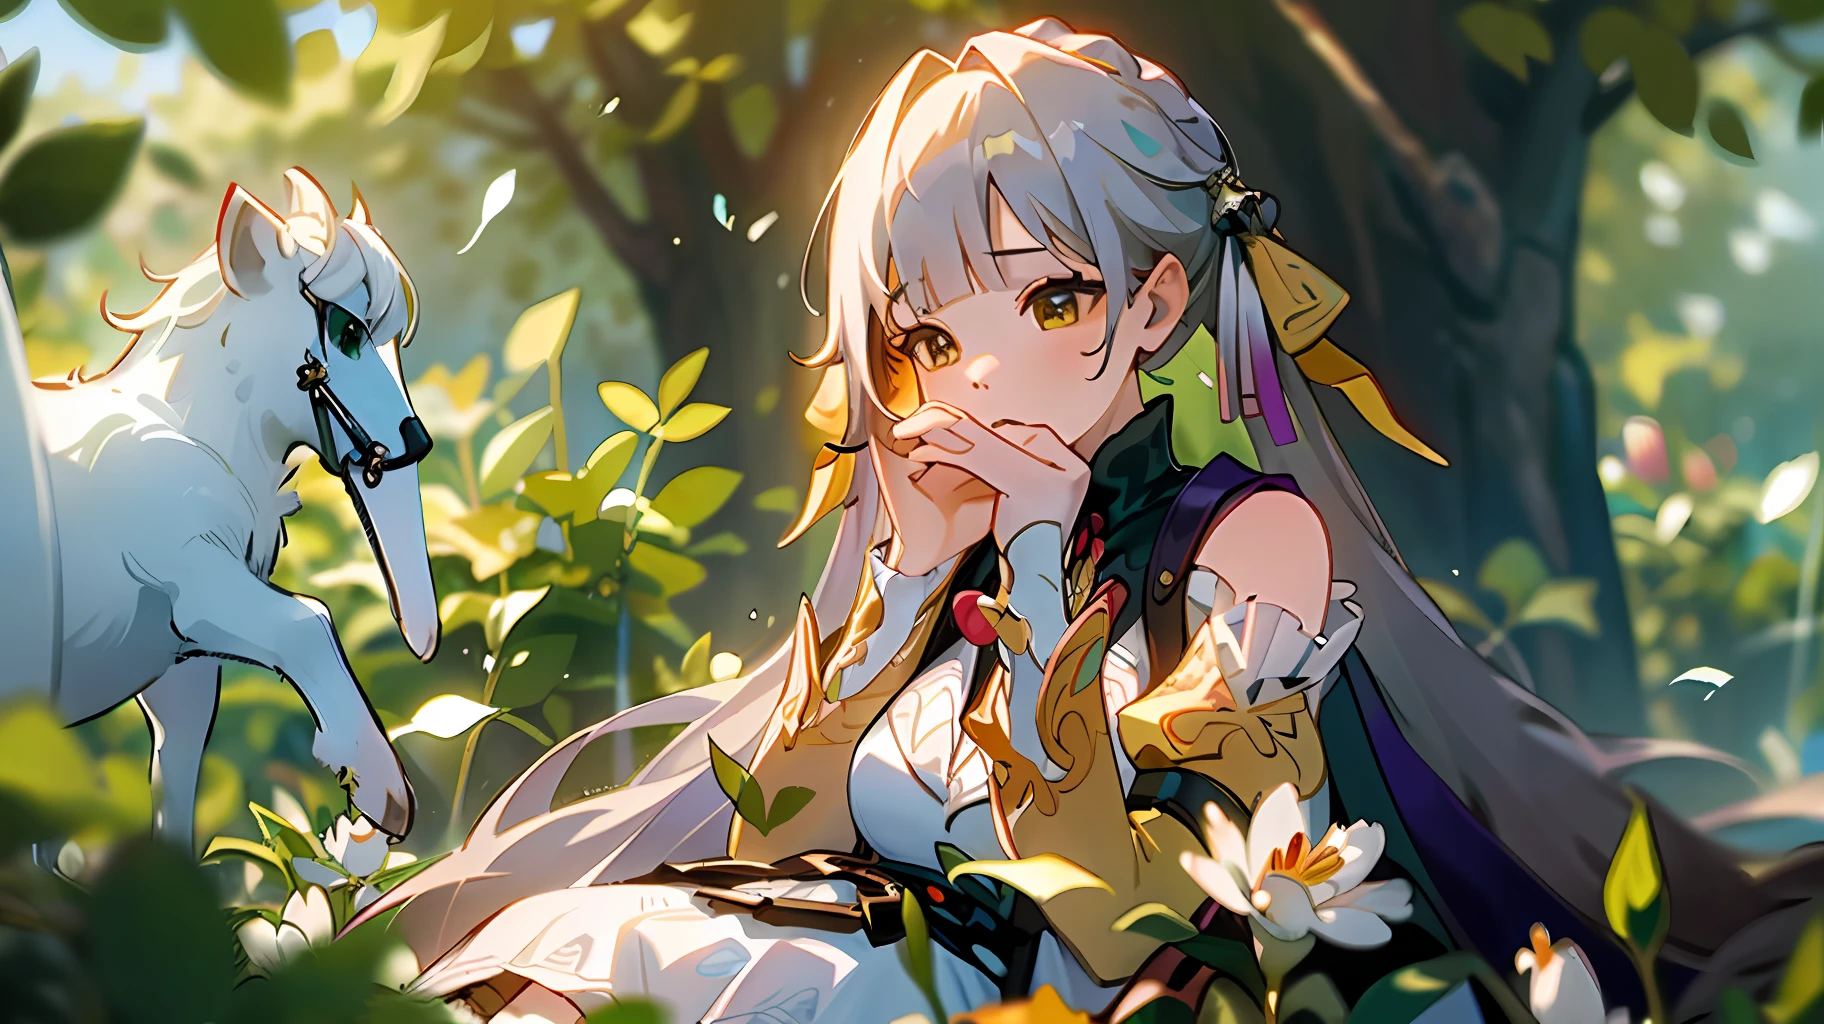 (obra de arte, melhor qualidade),1 garota com longos cabelos brancos sentada em um campo de plantas e flores verdes, a mão sob o queixo, iluminação quente, vestido branco, primeiro plano desfocado